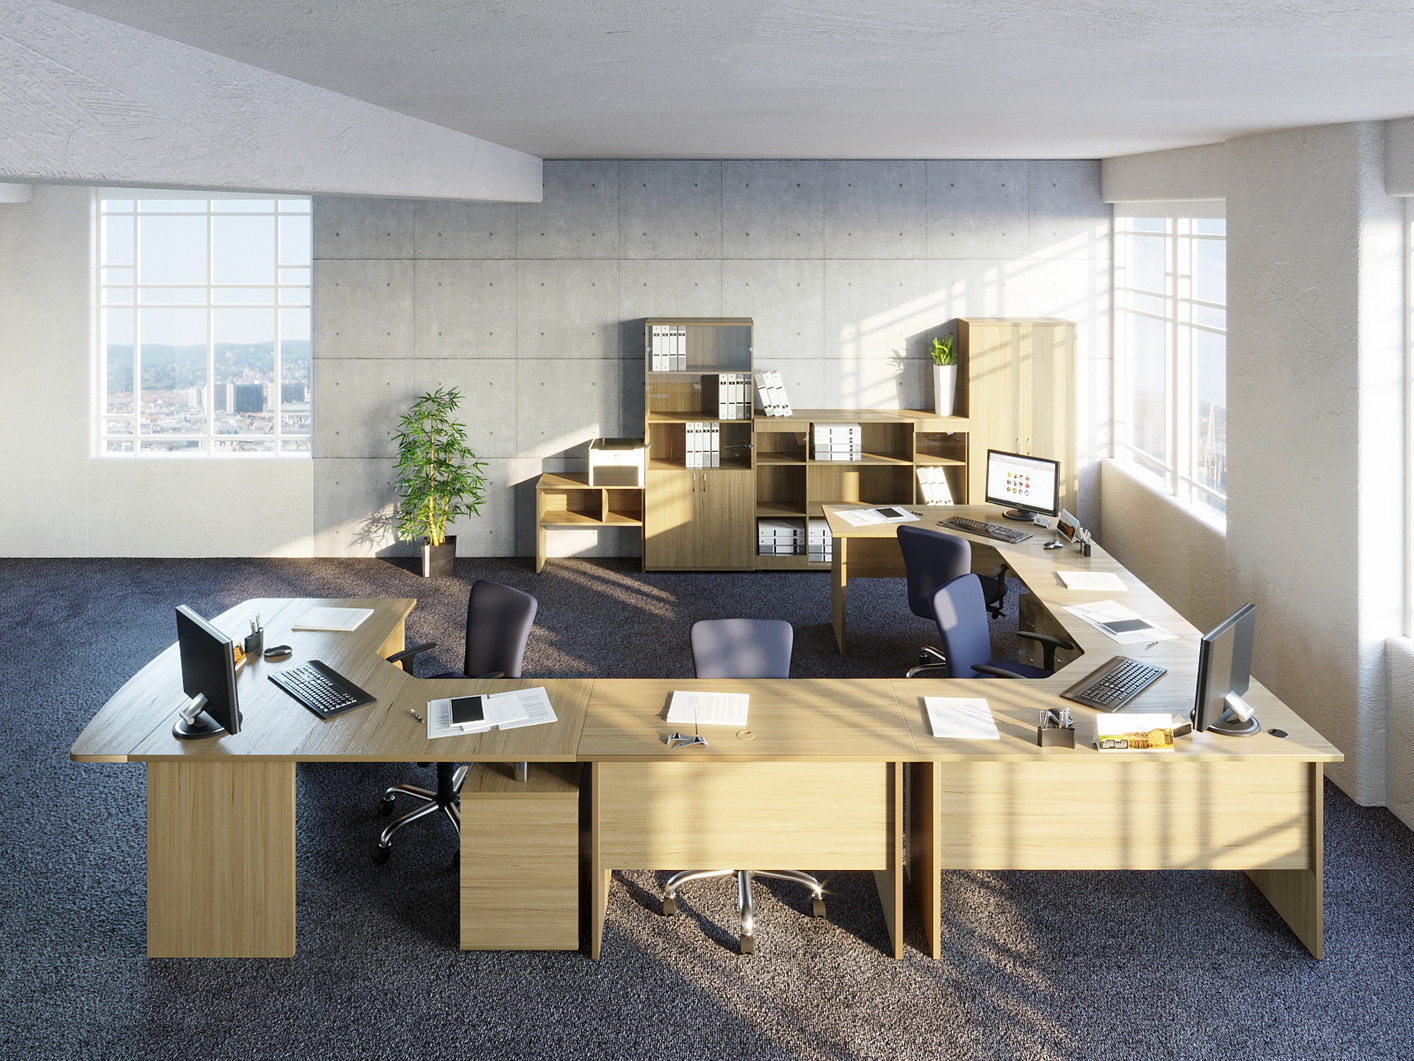 Качественная офисная мебель серии  «Вуд» для сотрудников  от производителя в Москве недорого